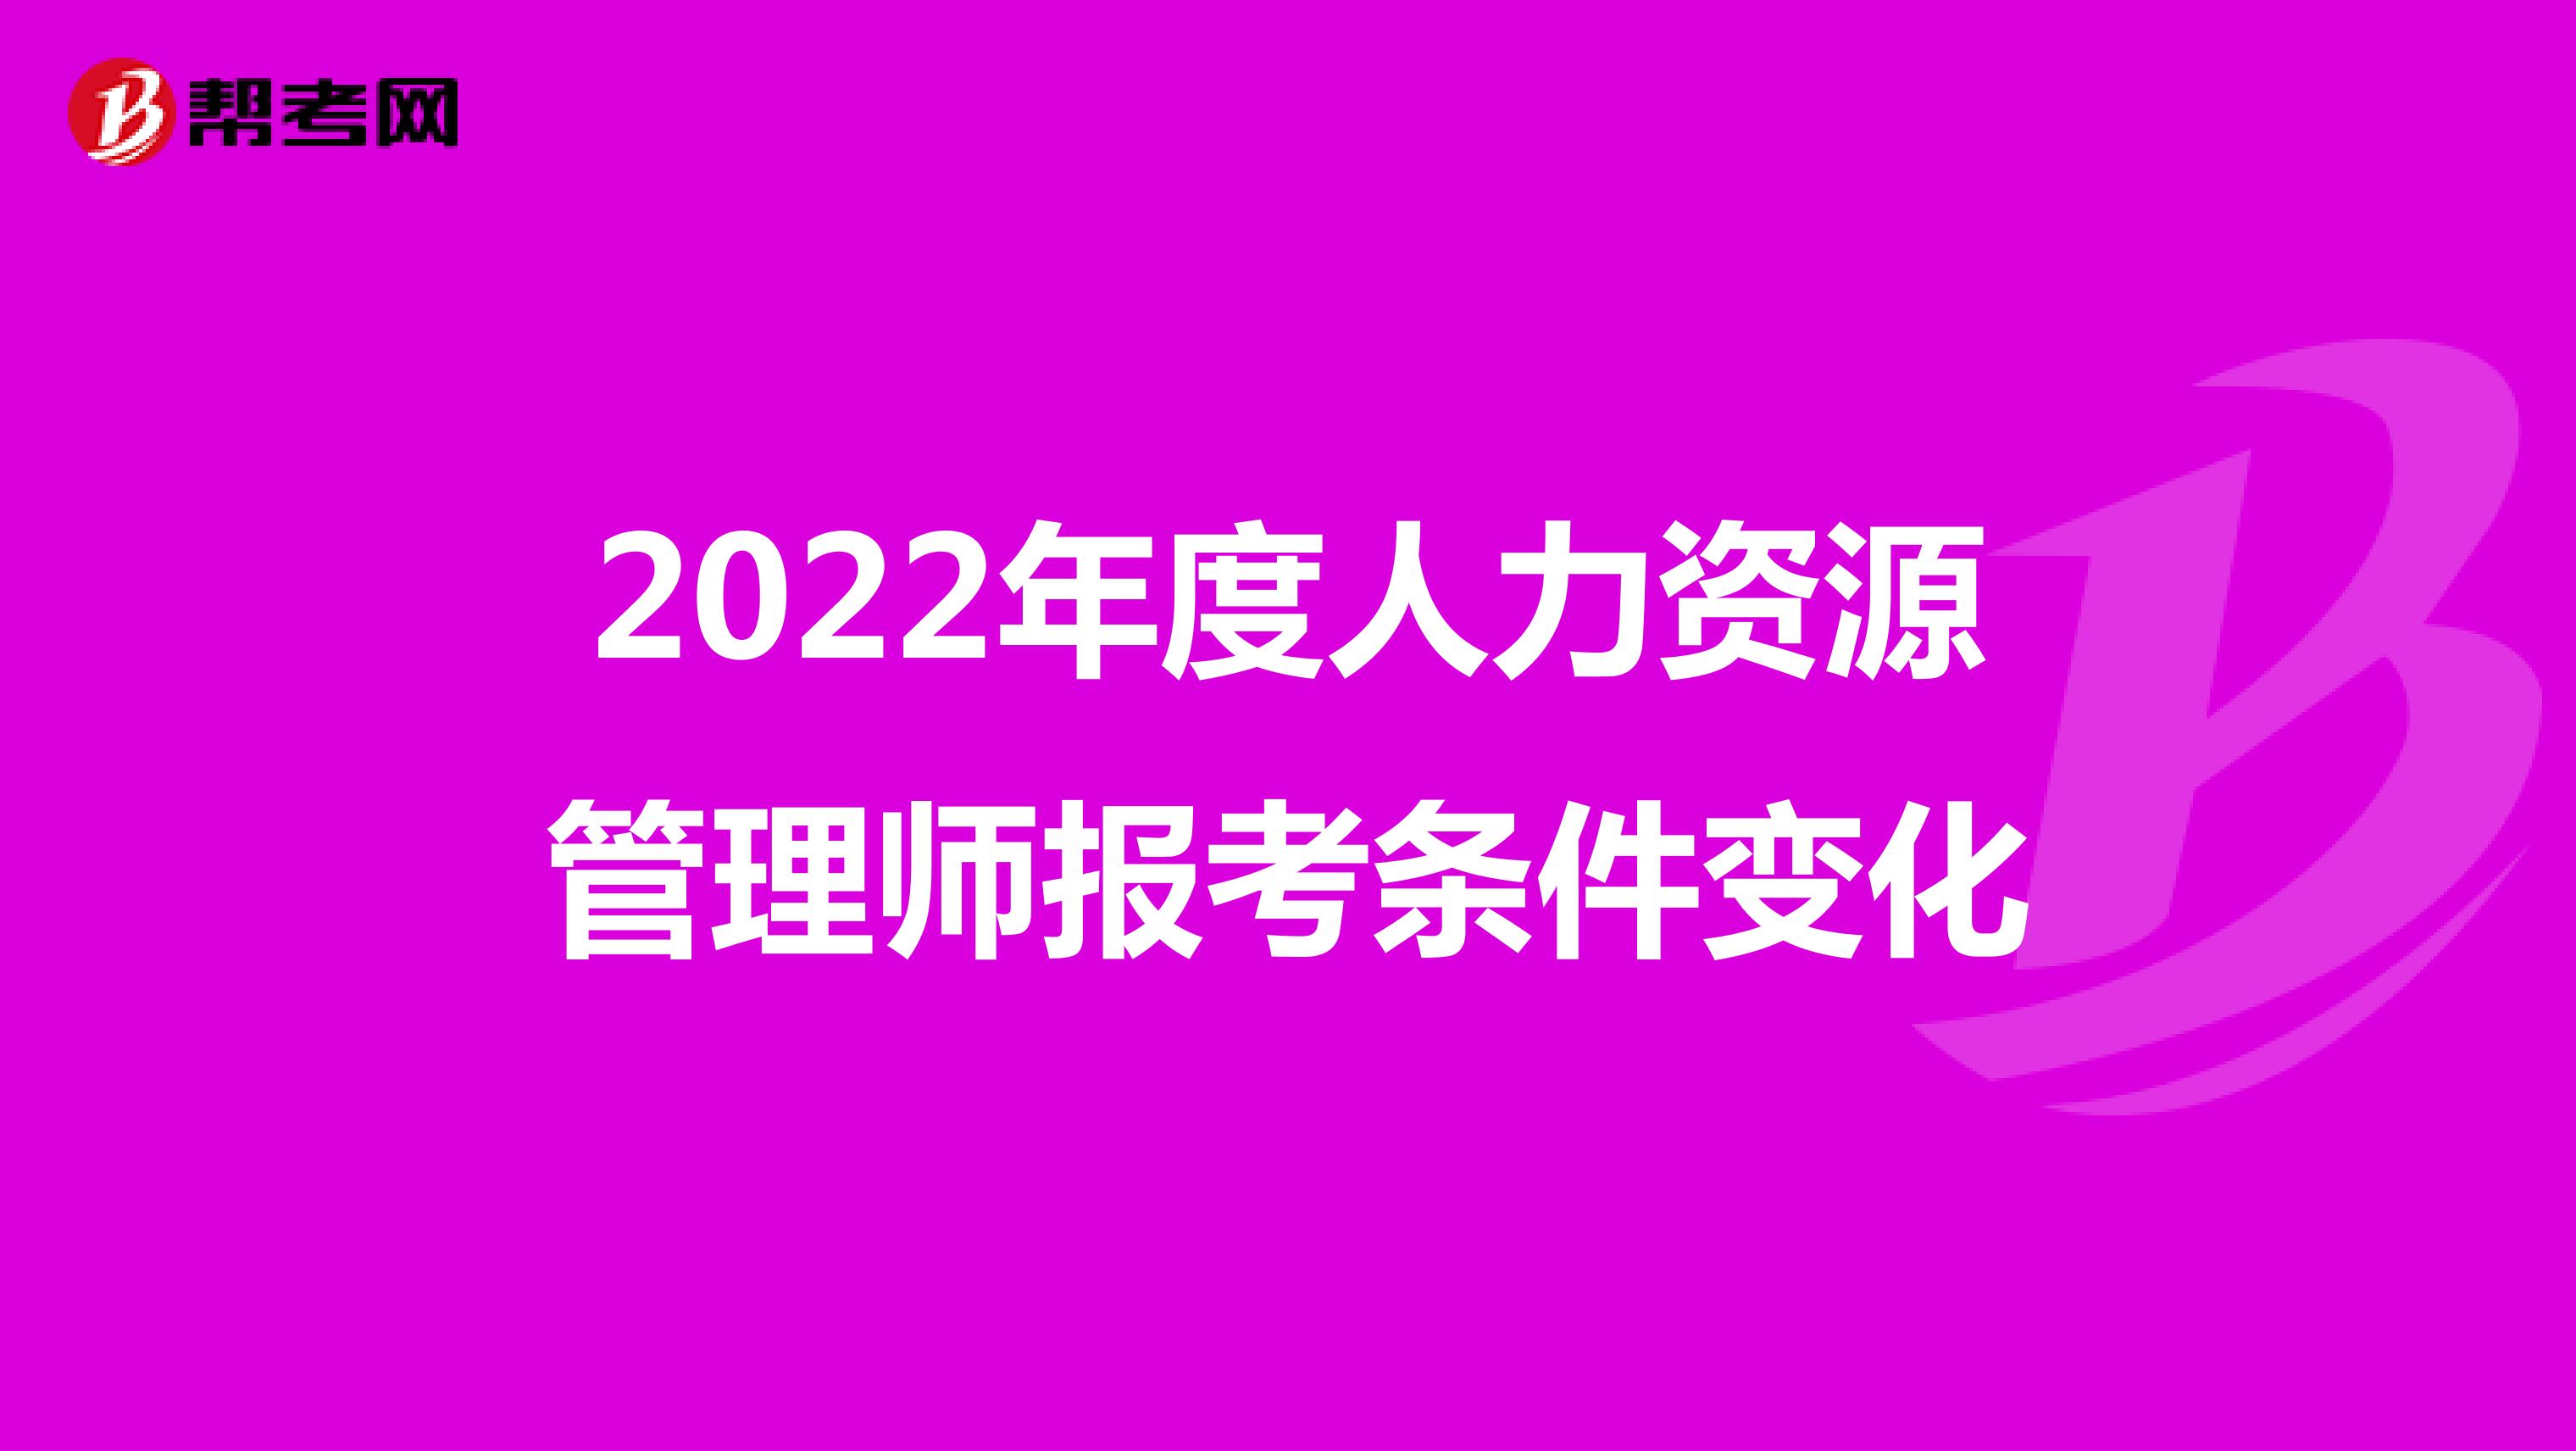 2022年度人力资源管理师报考条件变化